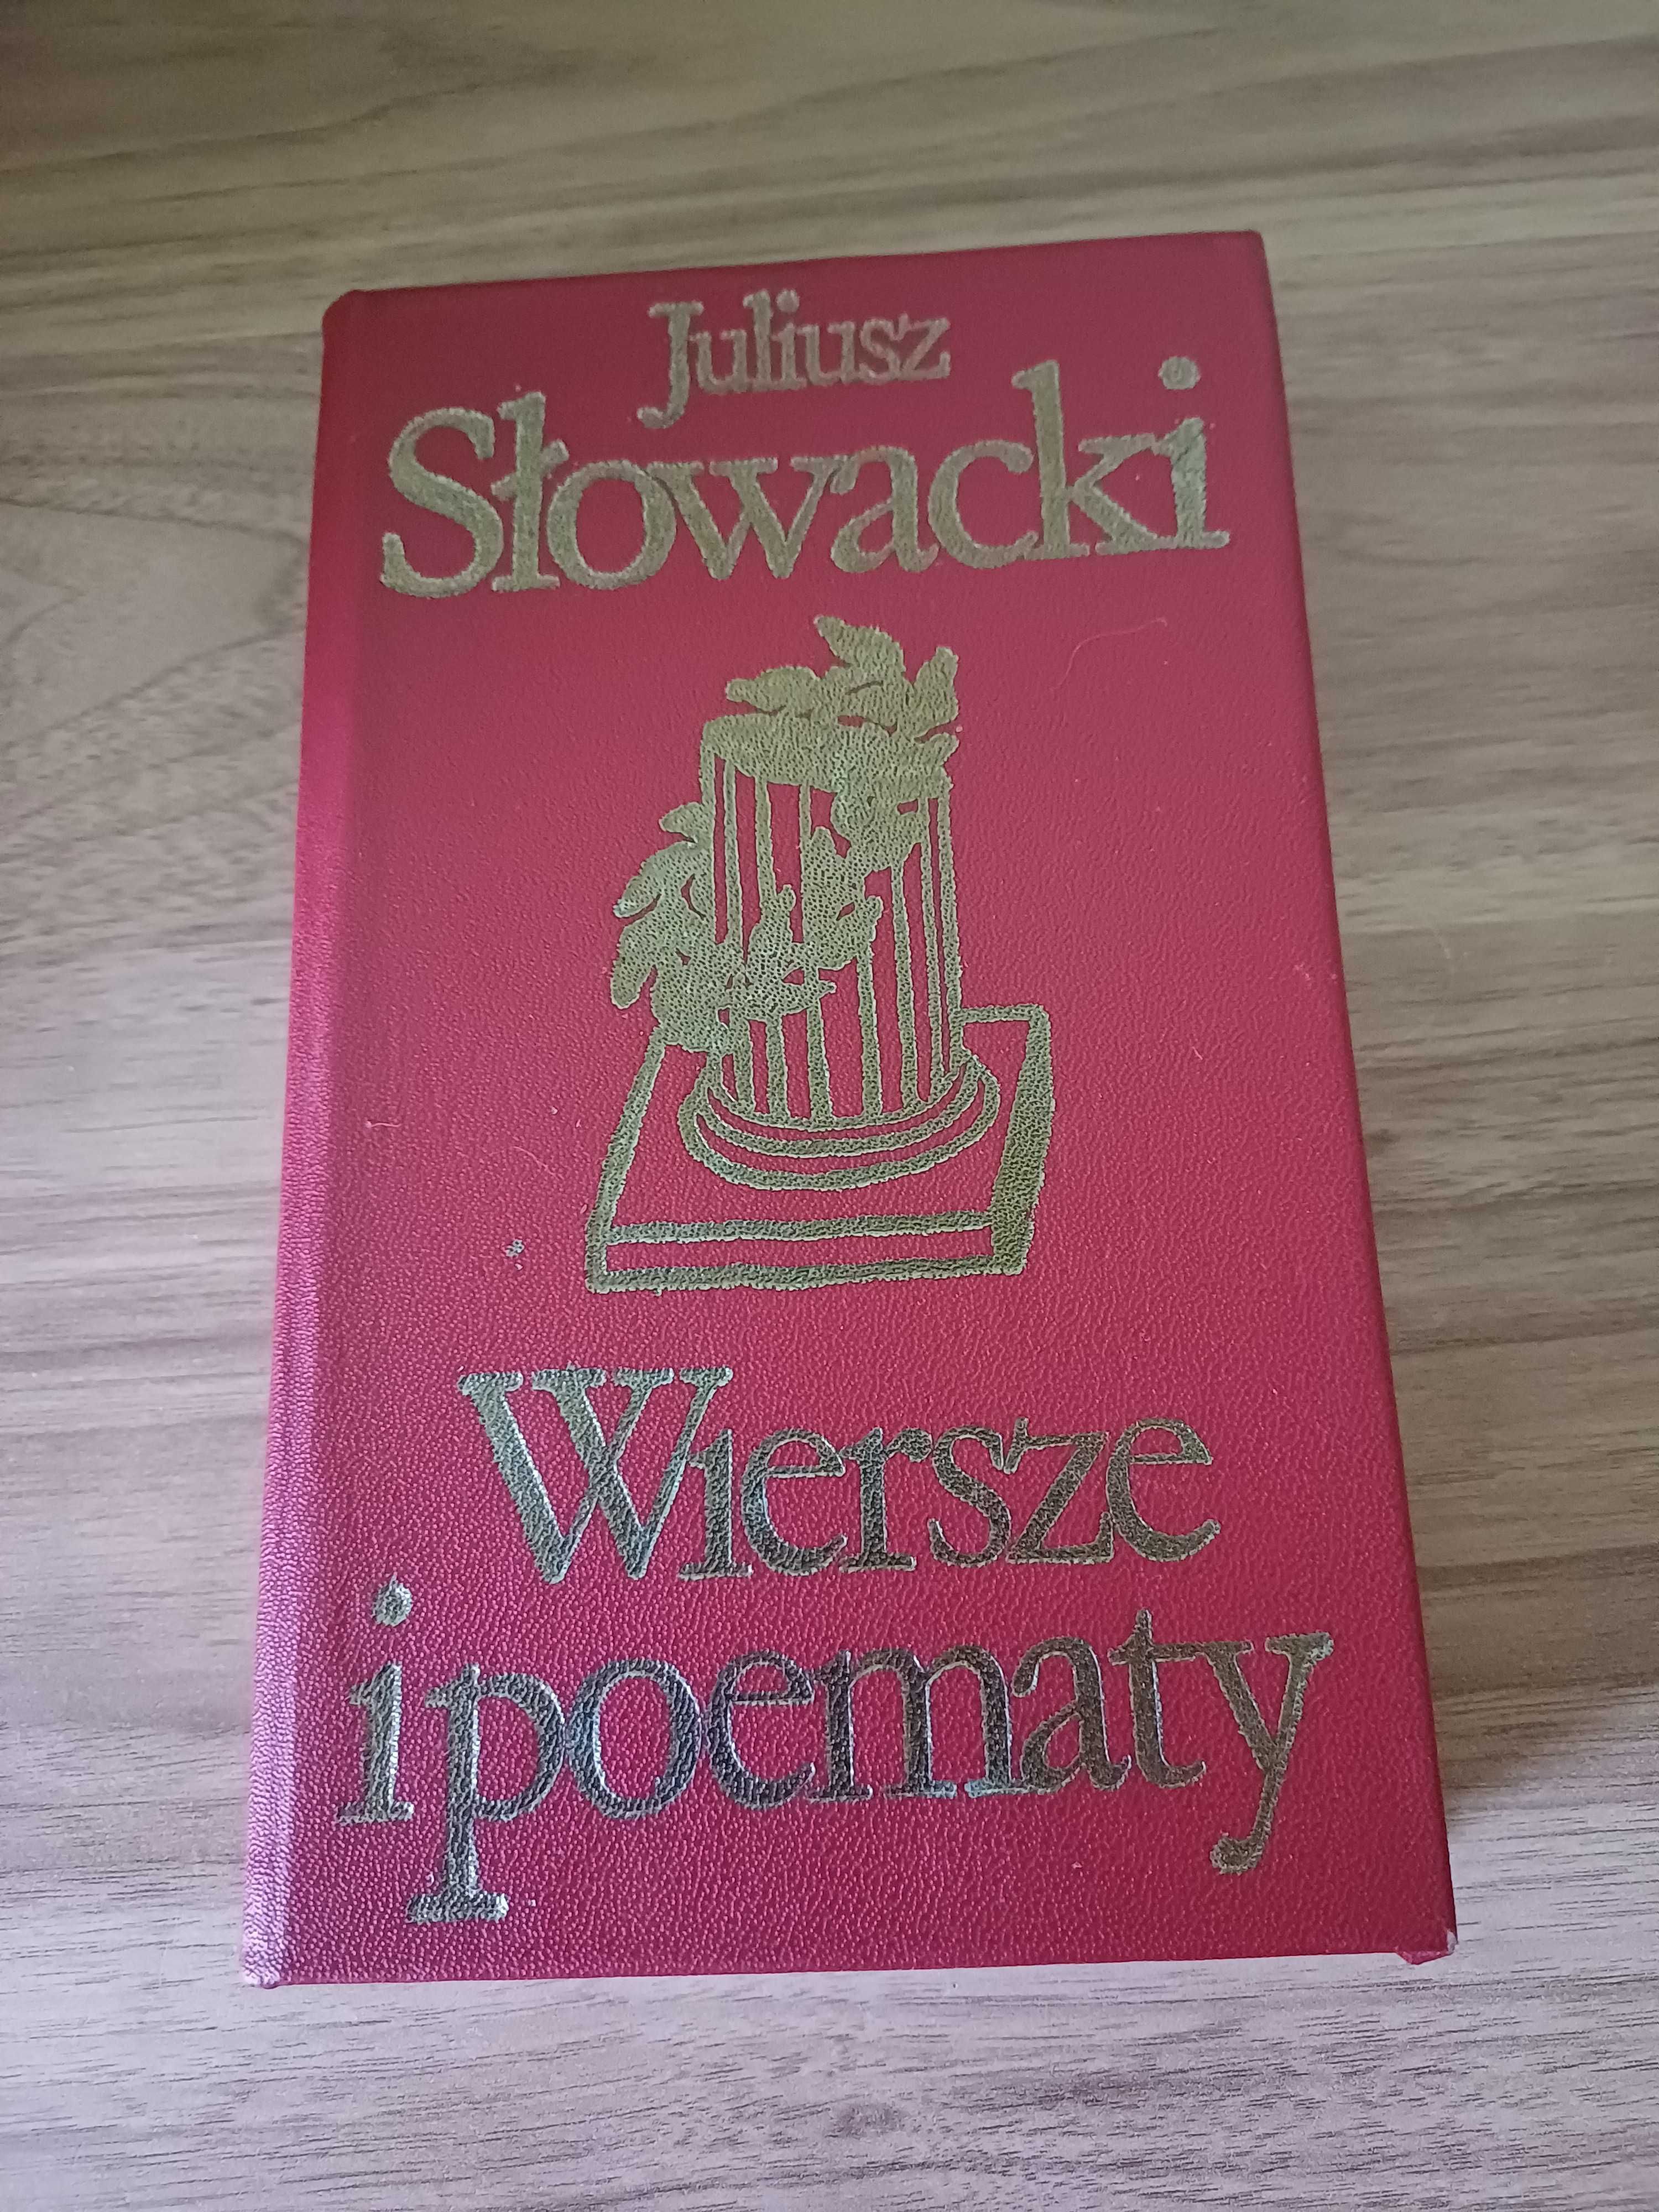 Wiersze i poematy Juliusz Słowacki